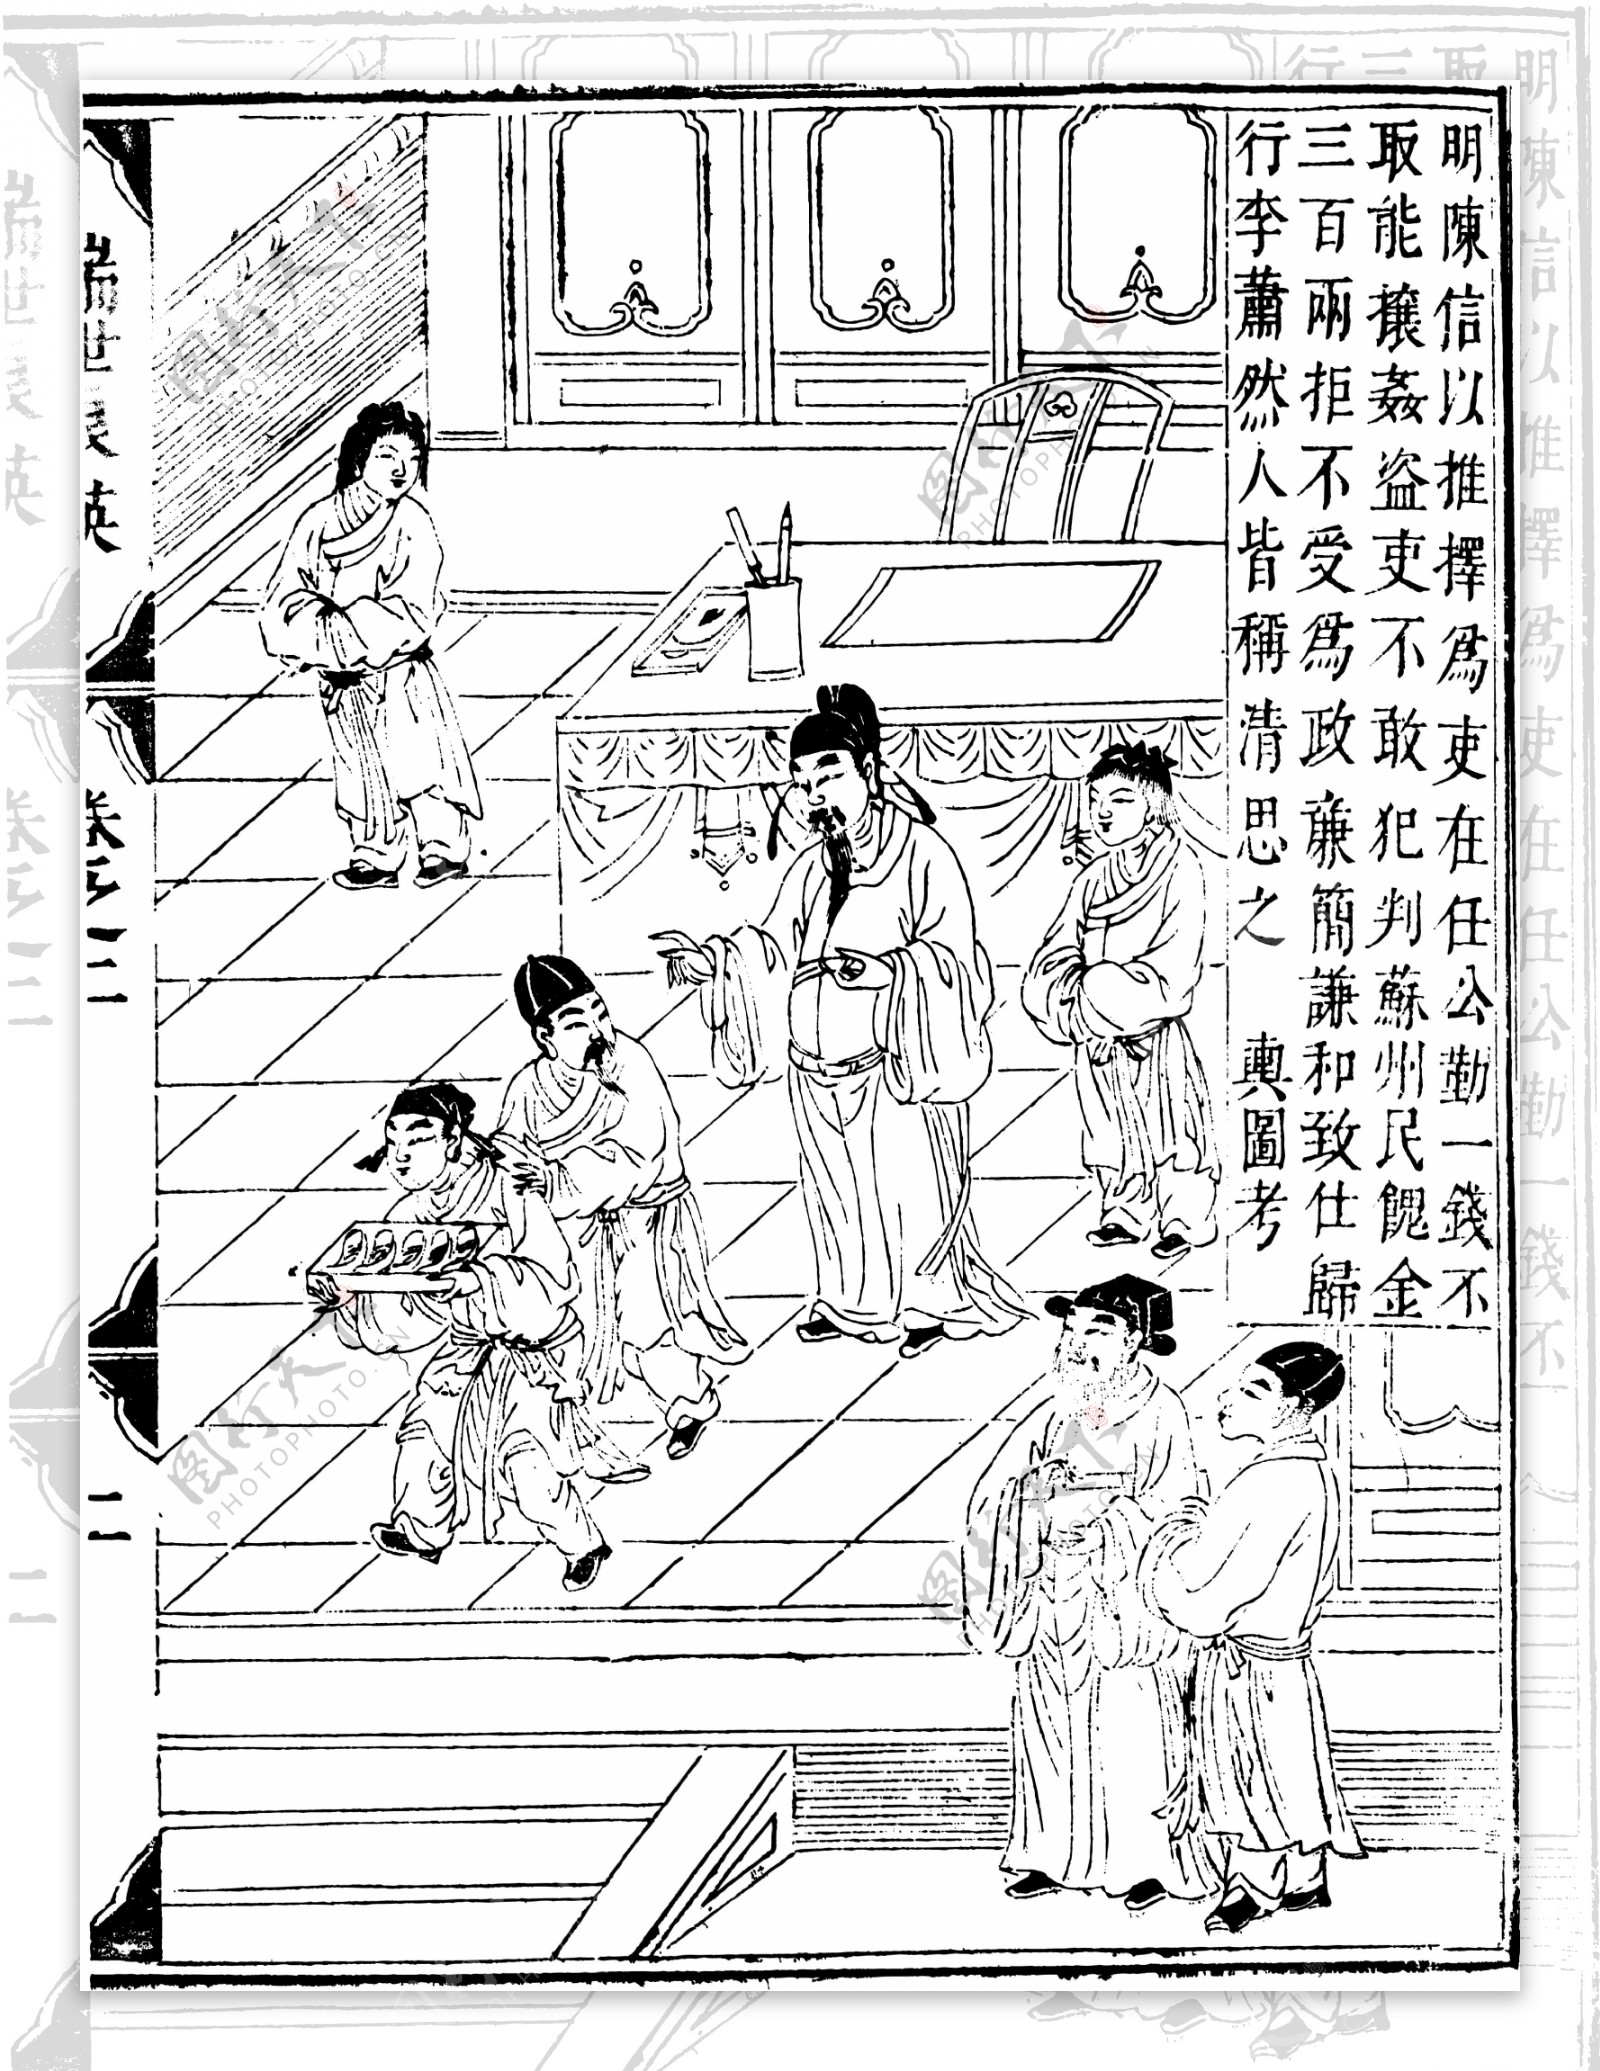 瑞世良英木刻版画中国传统文化76